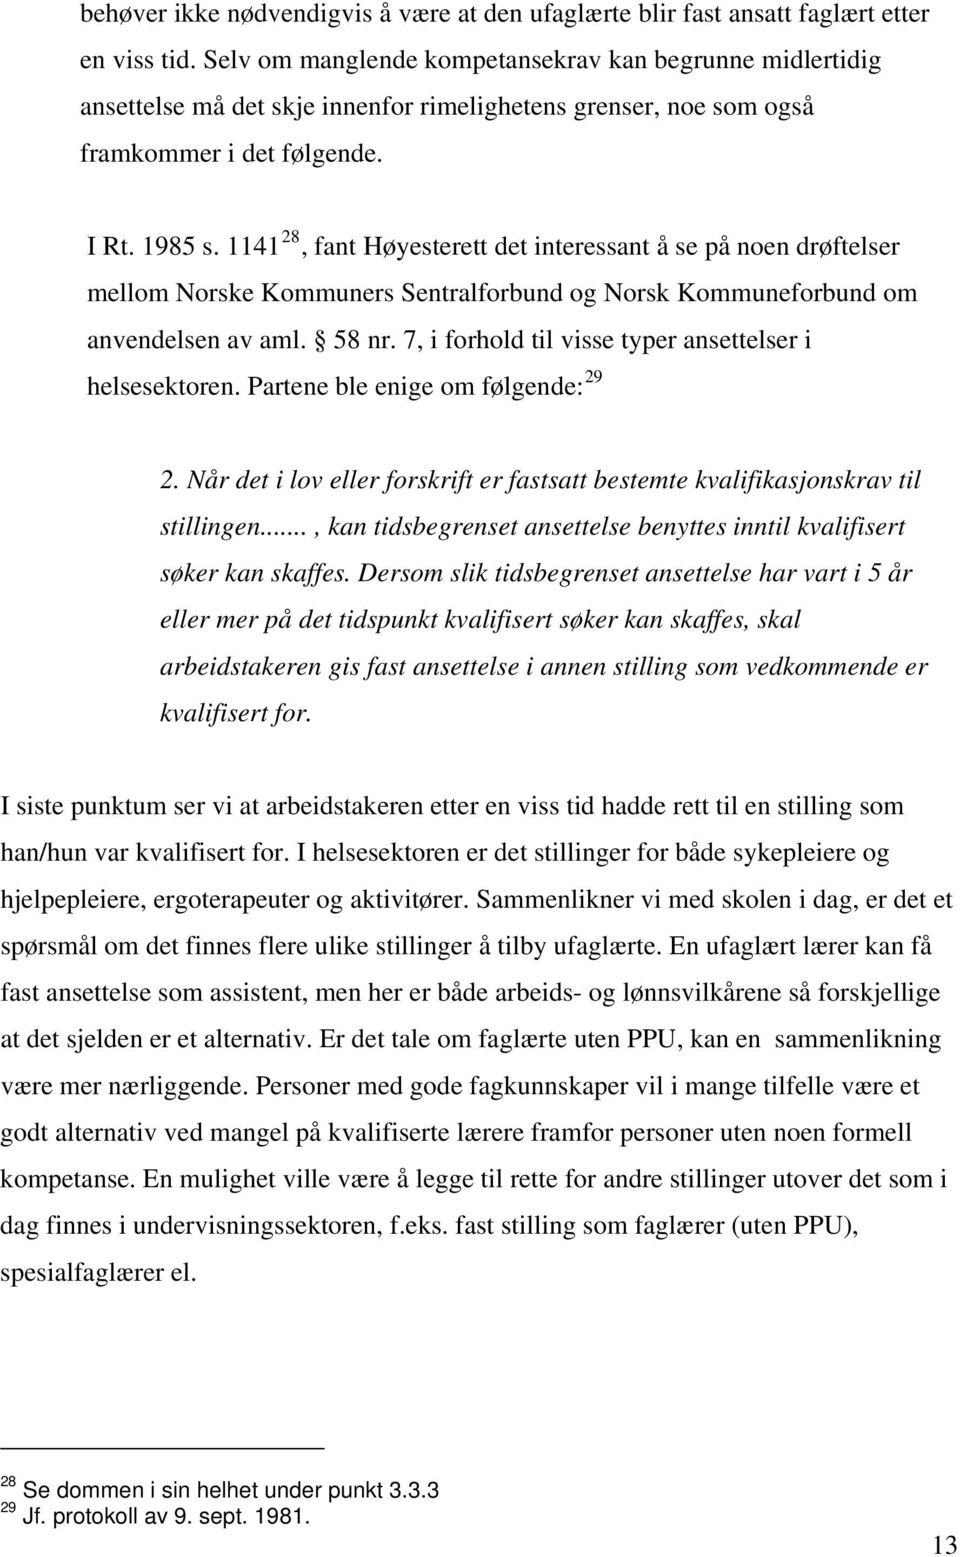 1141 28, fant Høyesterett det interessant å se på noen drøftelser mellom Norske Kommuners Sentralforbund og Norsk Kommuneforbund om anvendelsen av aml. 58 nr.